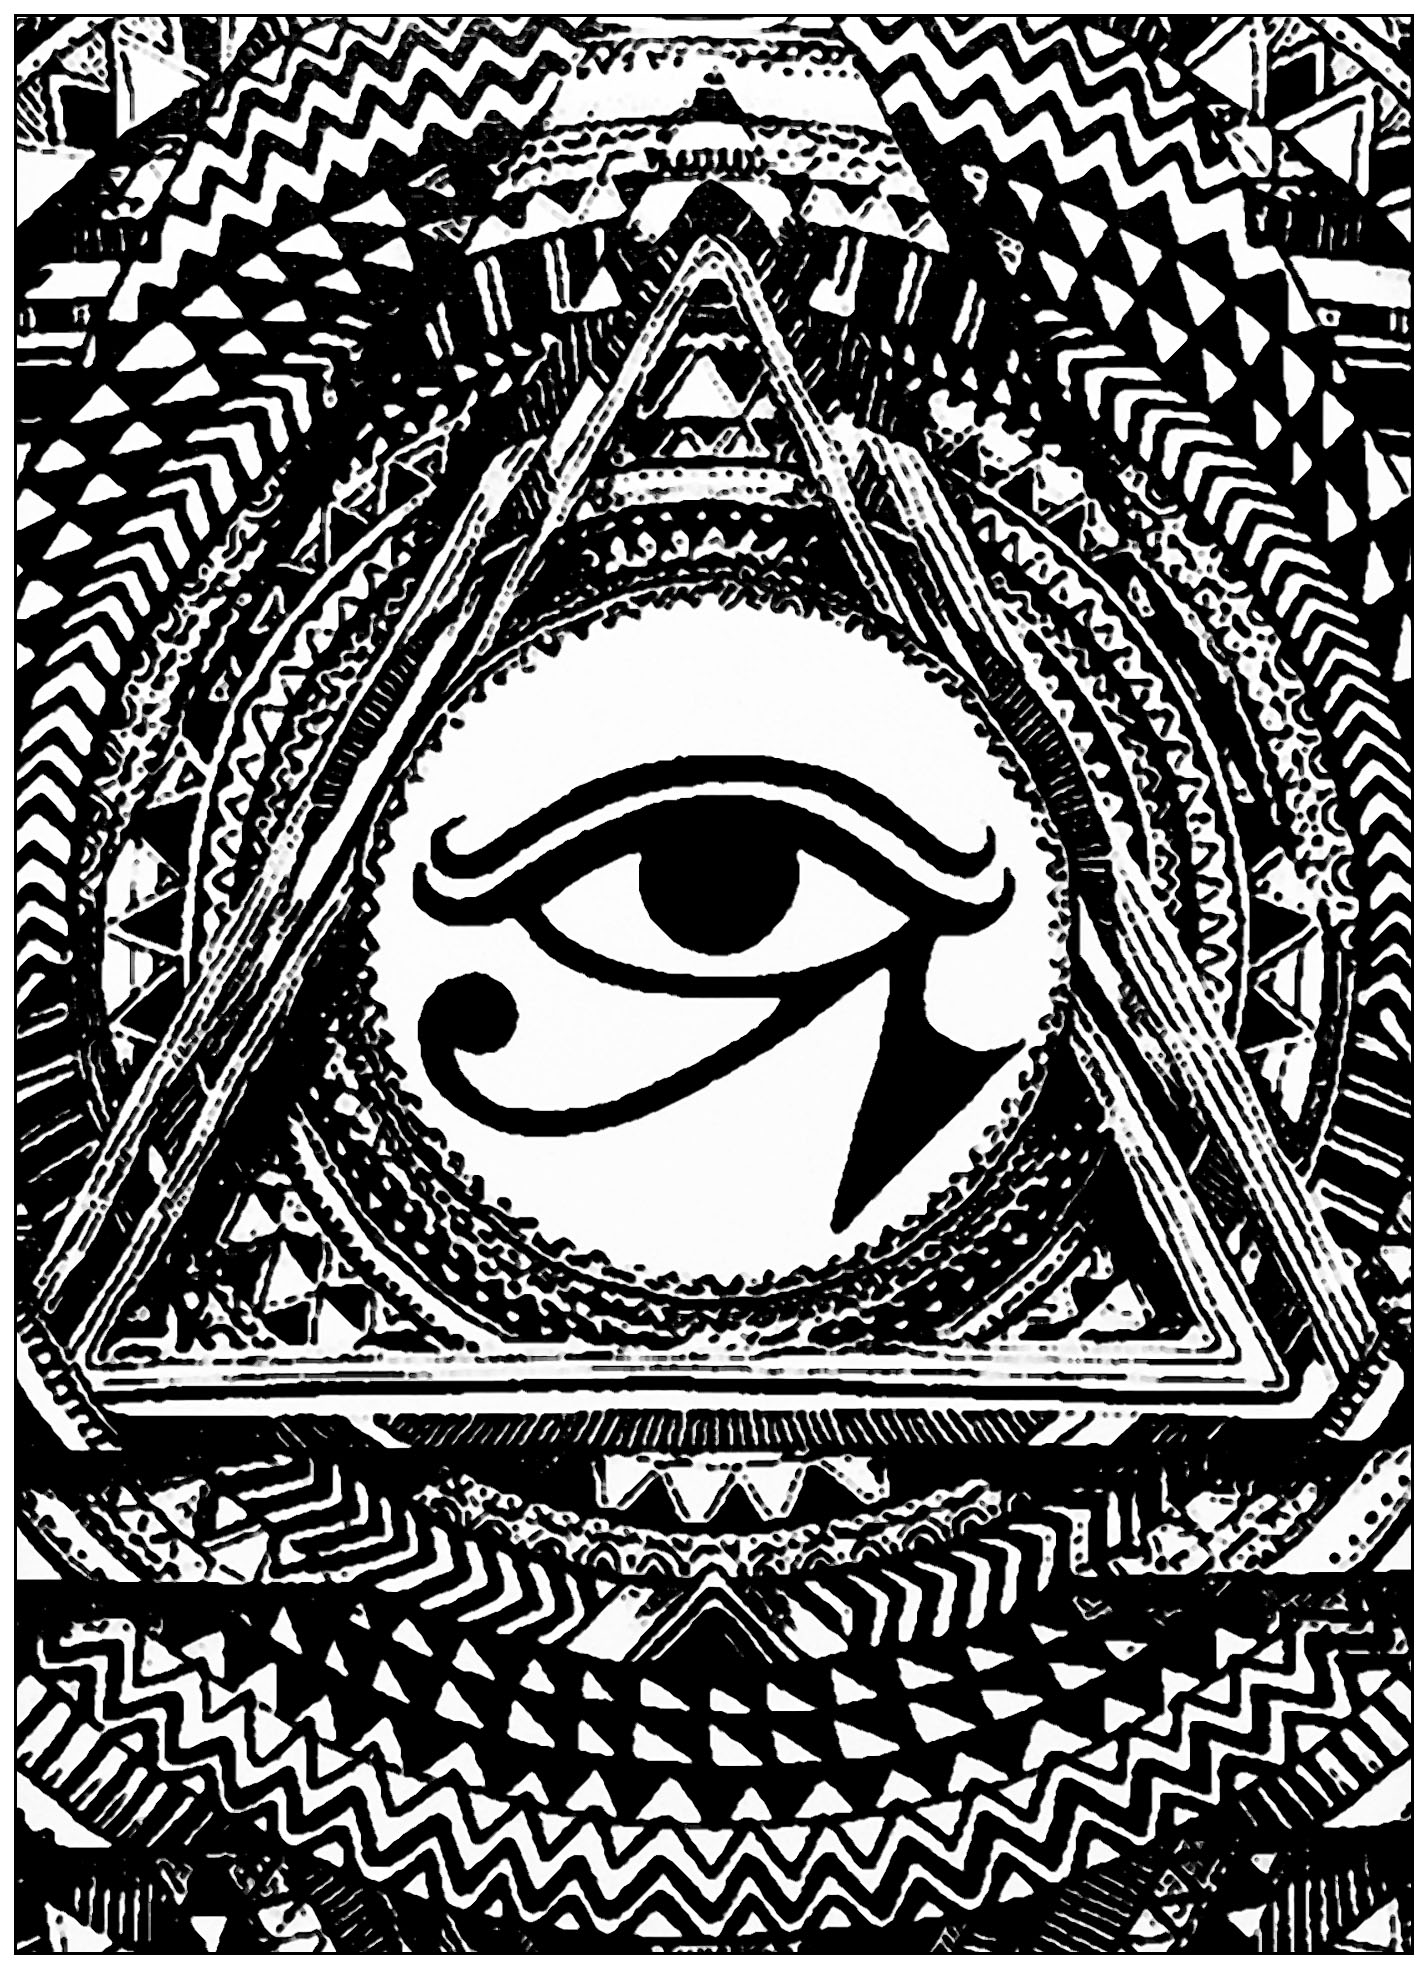 Ojo de Horus en un triánguloEl Ojo de Horus se utilizaba como signo de prosperidad y protección, derivado del mito de Isis y Osiris. Este símbolo tiene una sorprendente conexión entre estructura y función neuroanatómica.